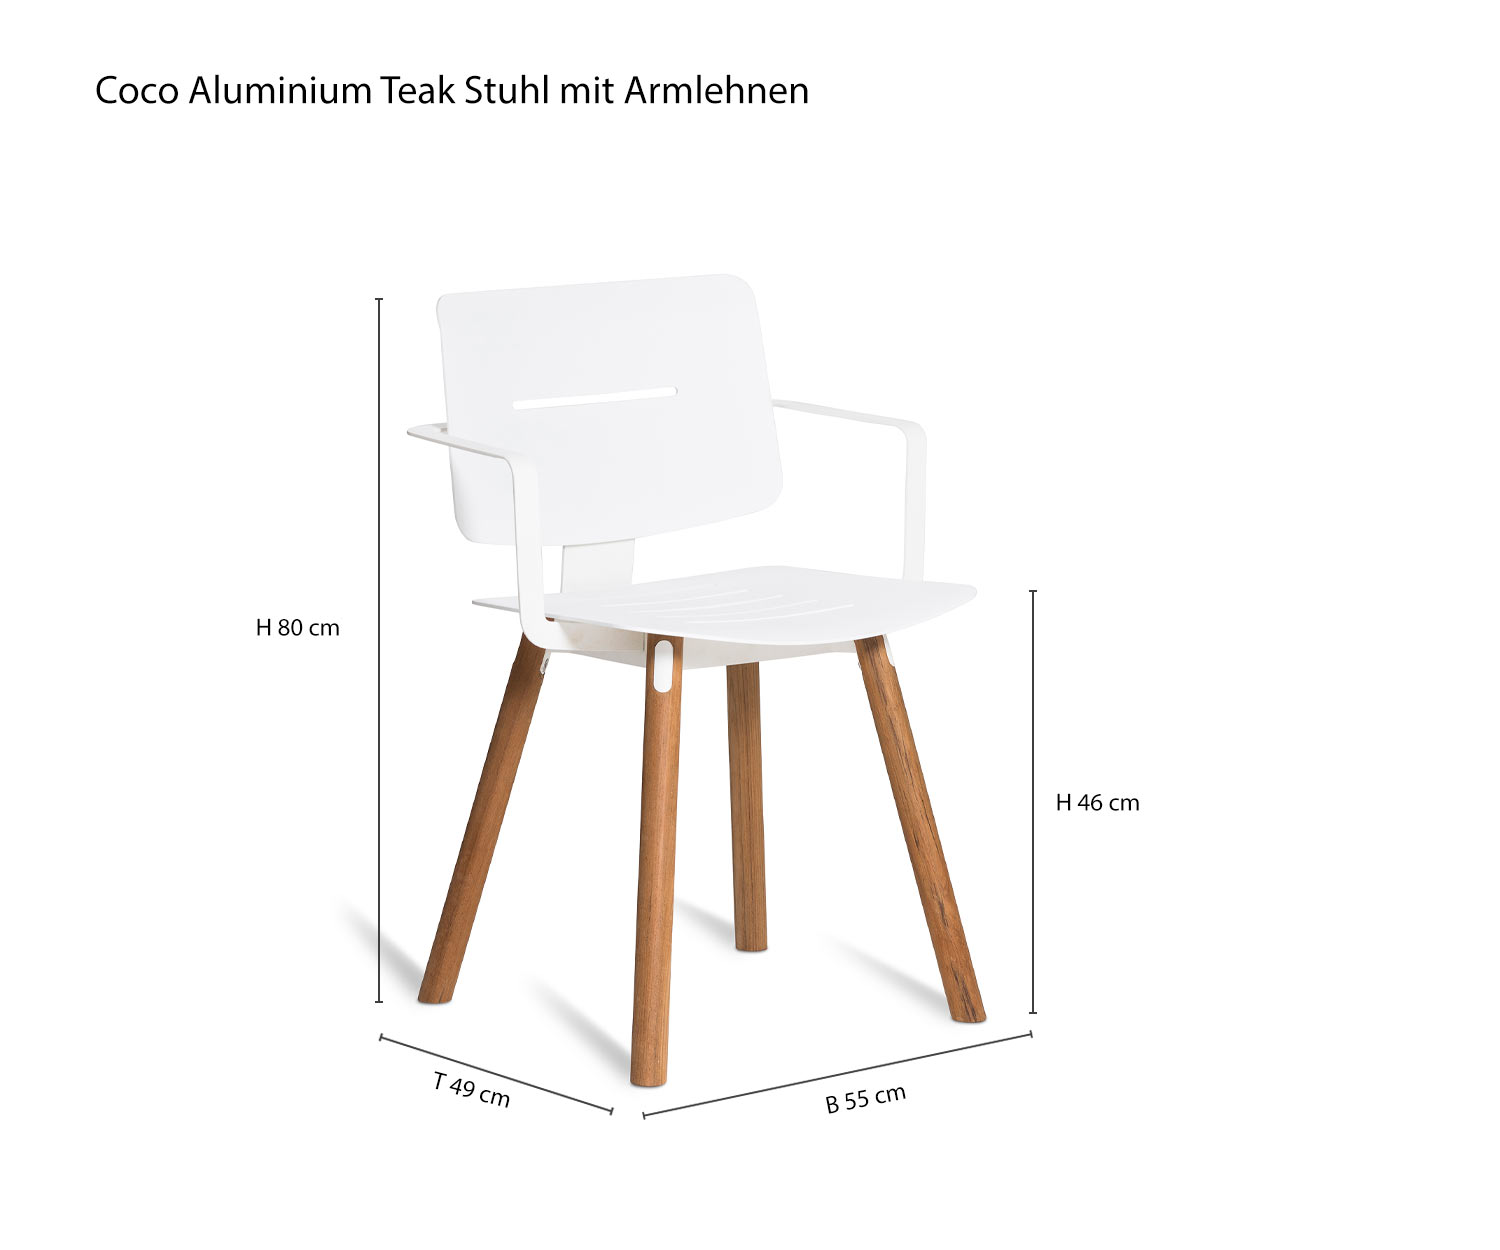 Coco design teakhouten stoel met armleuning van Oasiq Schets Afmetingen Afmetingen